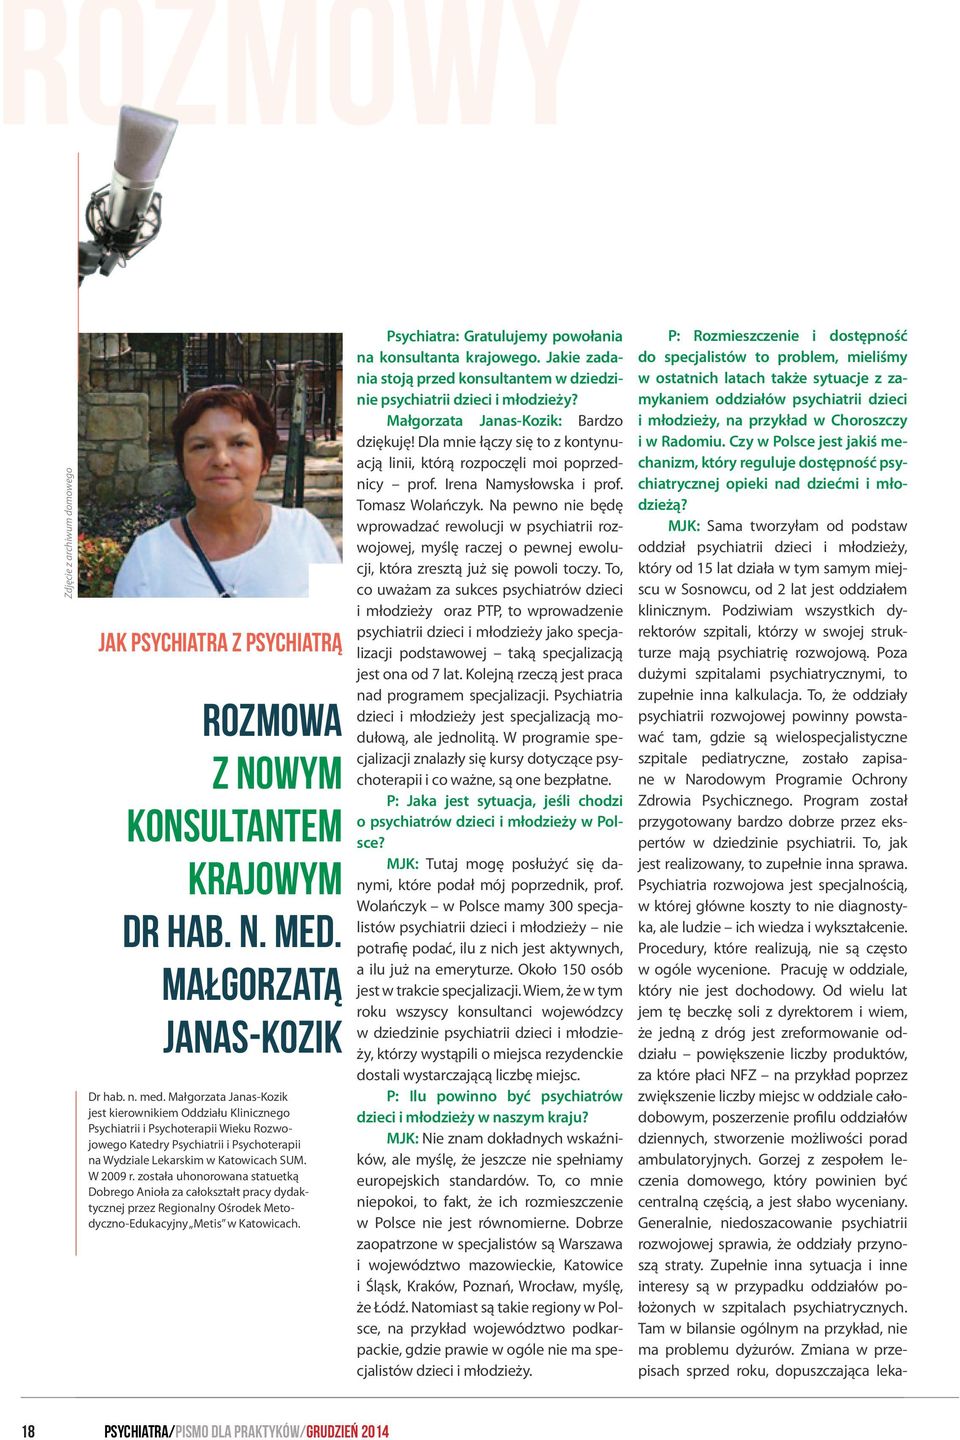 Małgorzata Janas-Kozik jest kierownikiem Oddziału Klinicznego Psychiatrii i Psychoterapii Wieku Rozwojowego Katedry Psychiatrii i Psychoterapii na Wydziale Lekarskim w Katowicach SUM. W 2009 r.